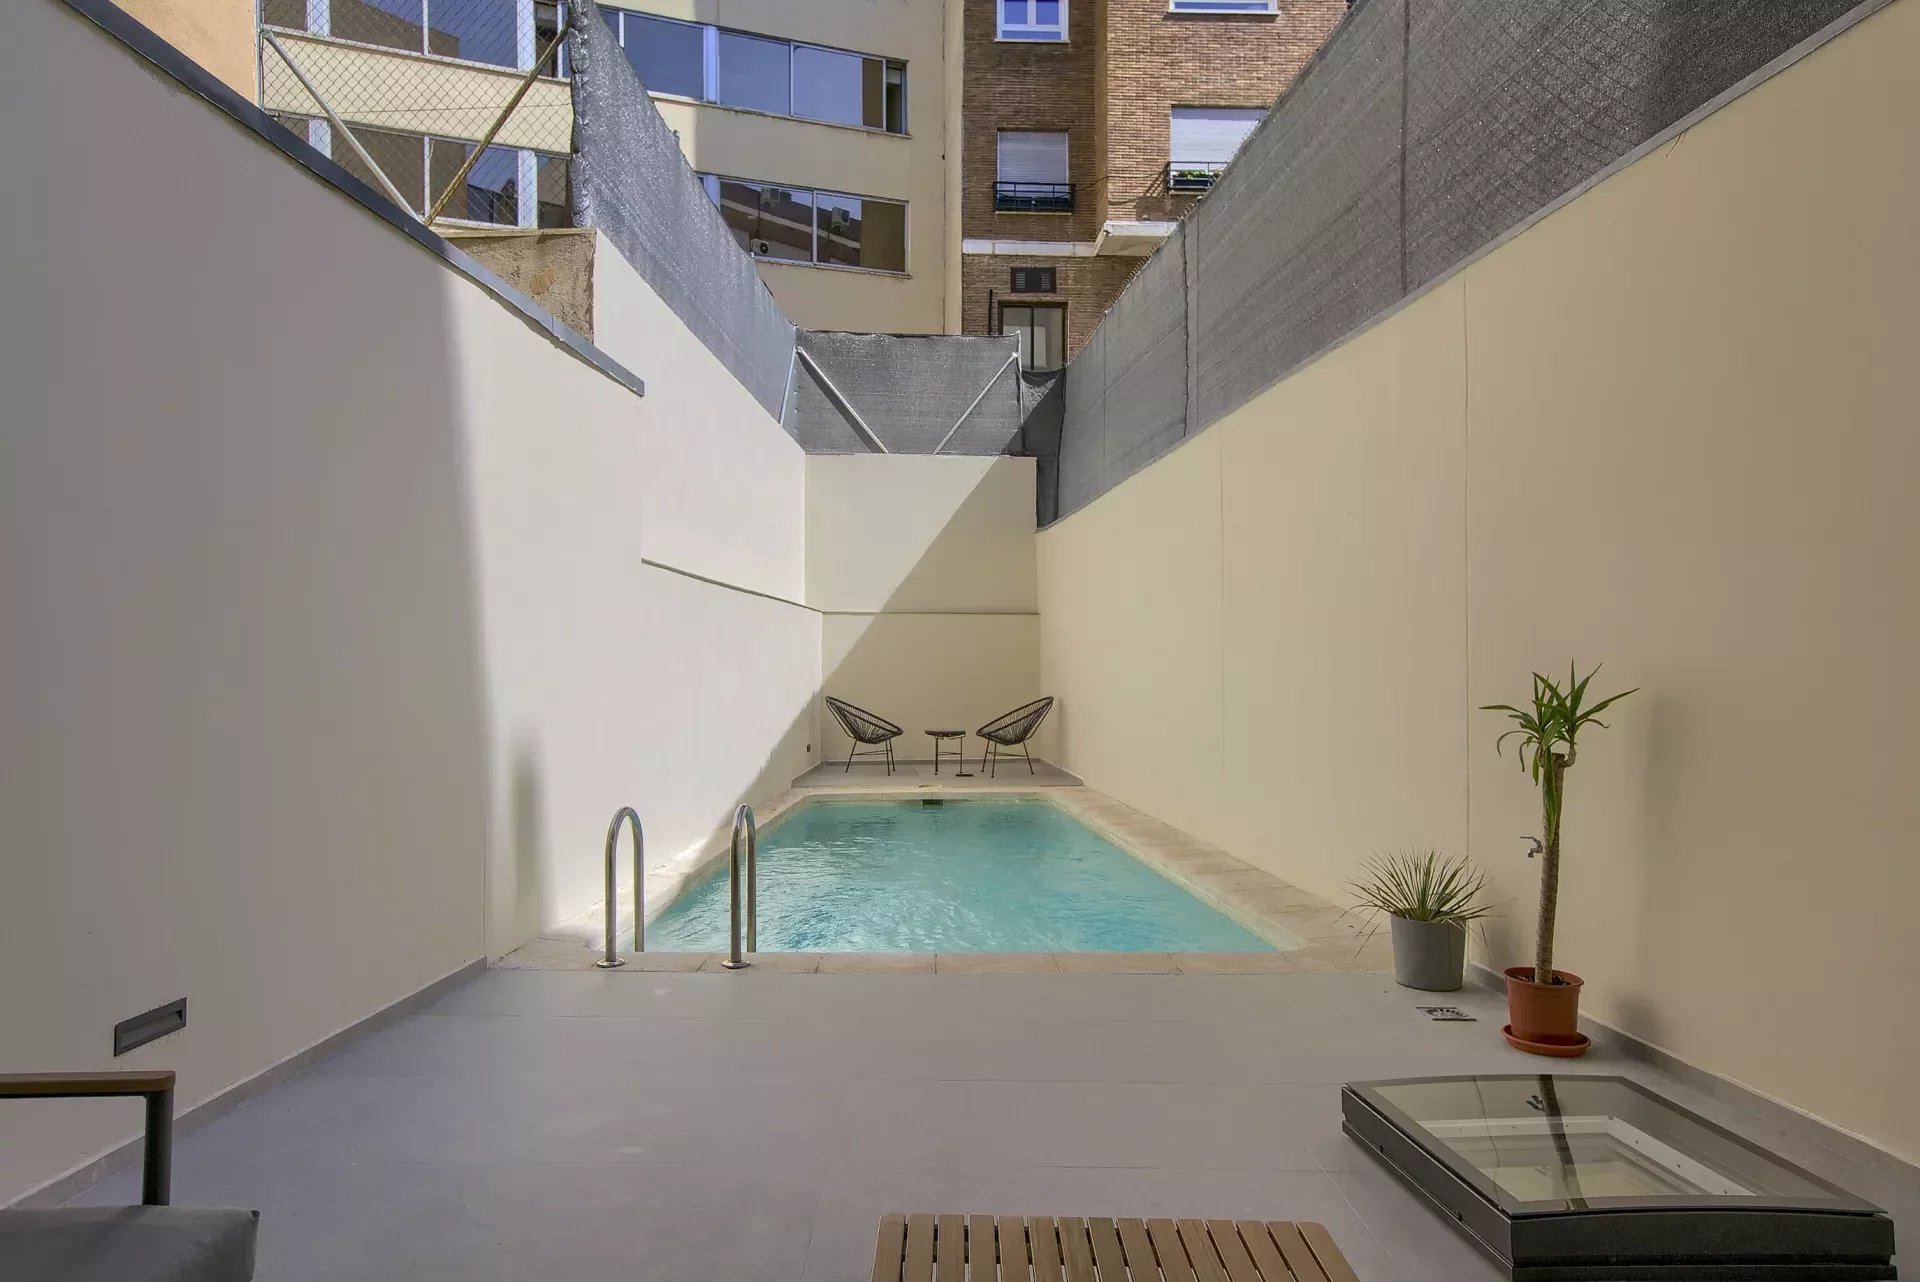 Madrid - Chamberi - Almagro - Triplex meublé de 2 chambres à coucher avec piscine privée - picture 20 title=